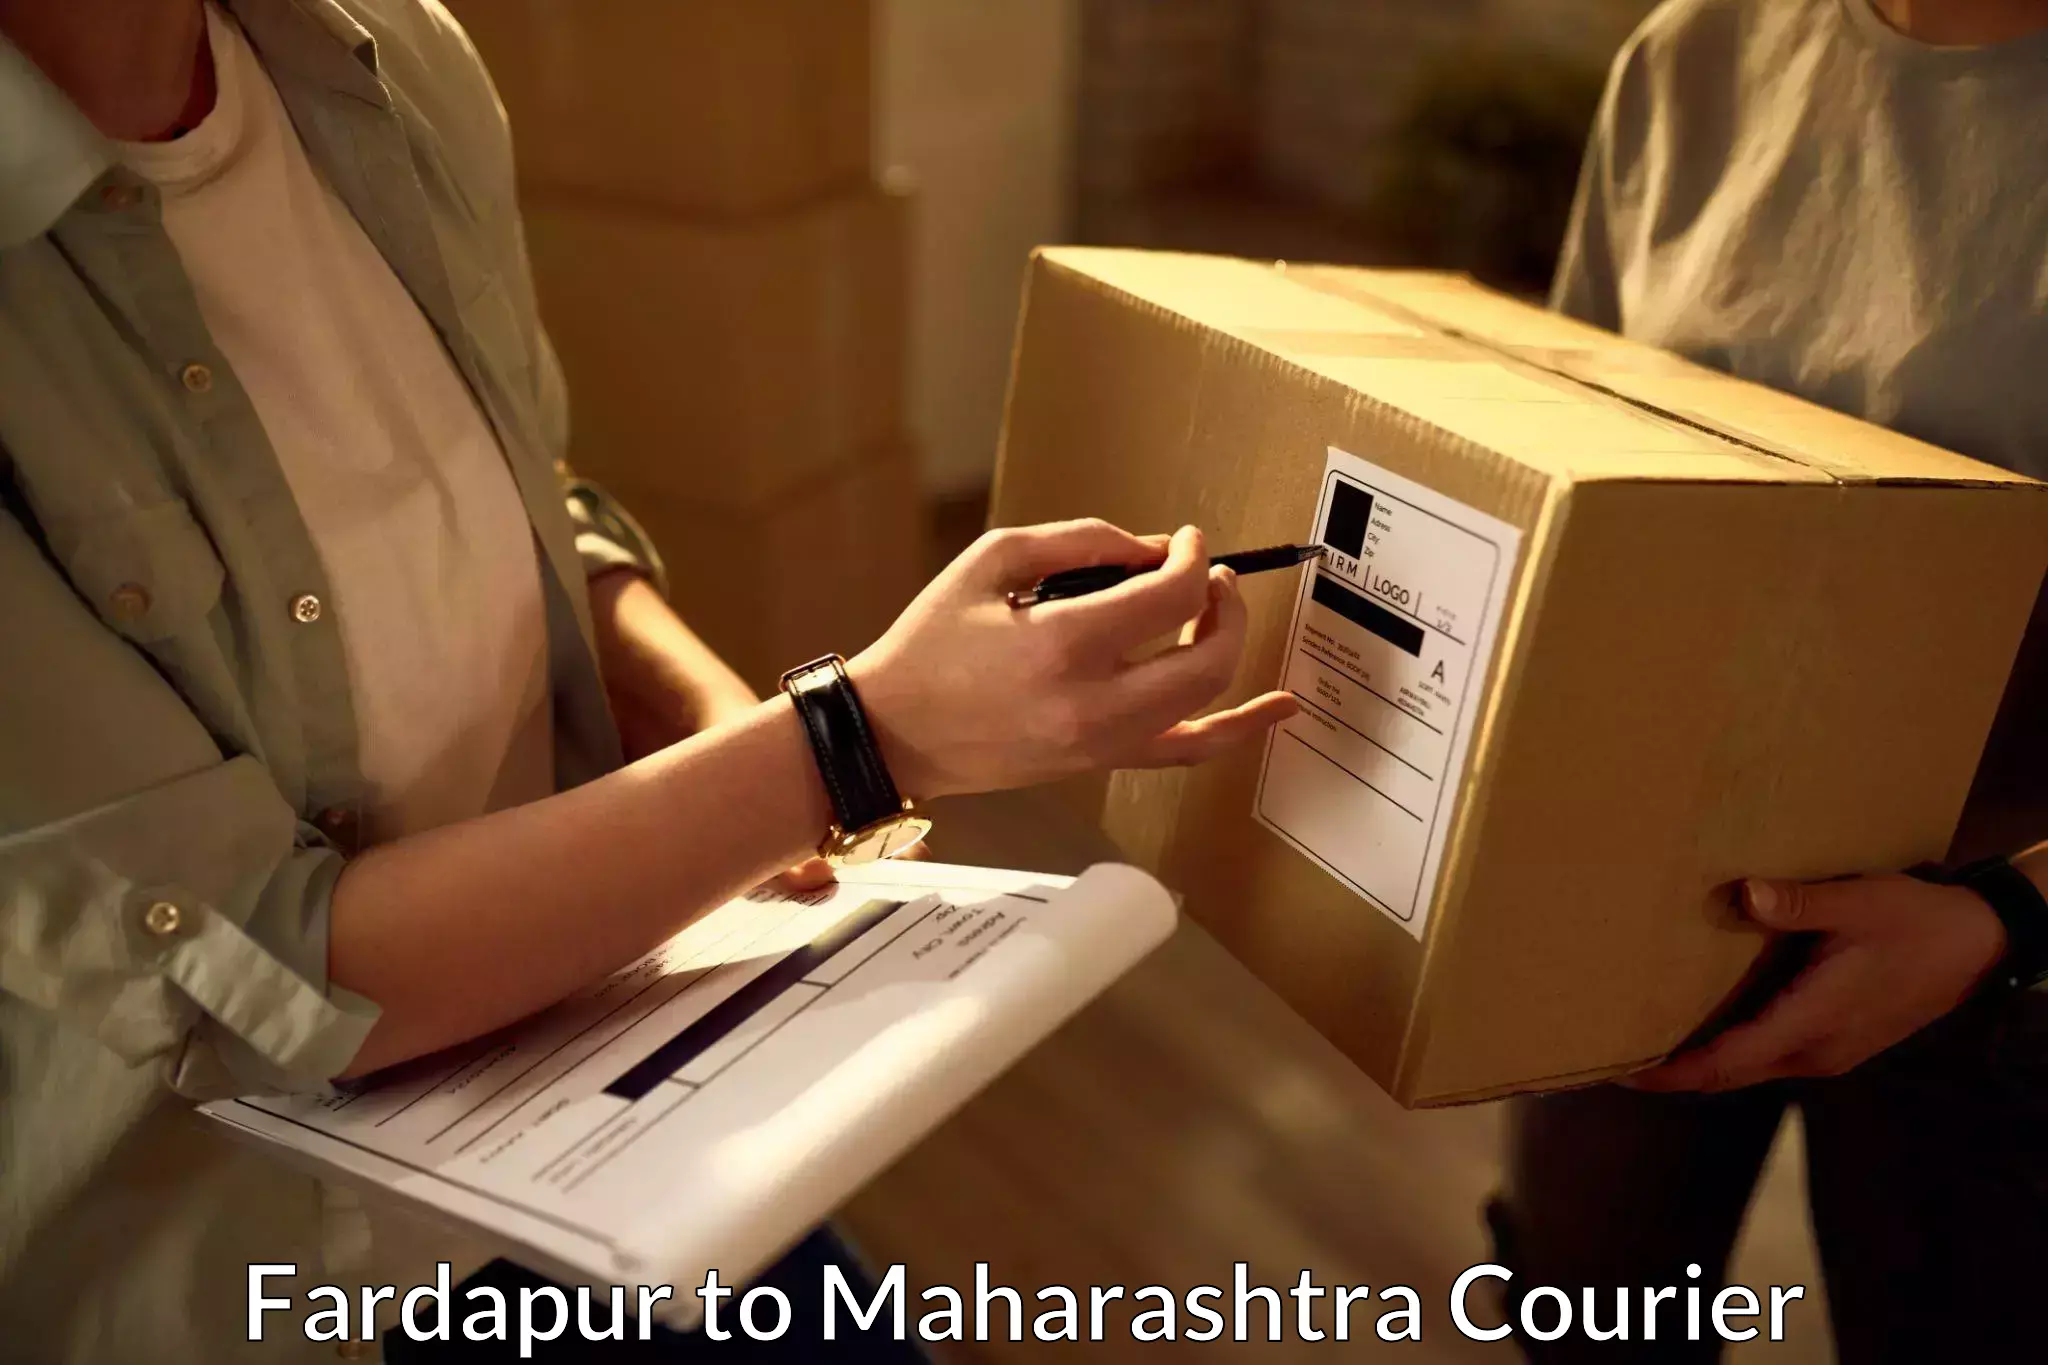 24/7 shipping services Fardapur to Maharashtra